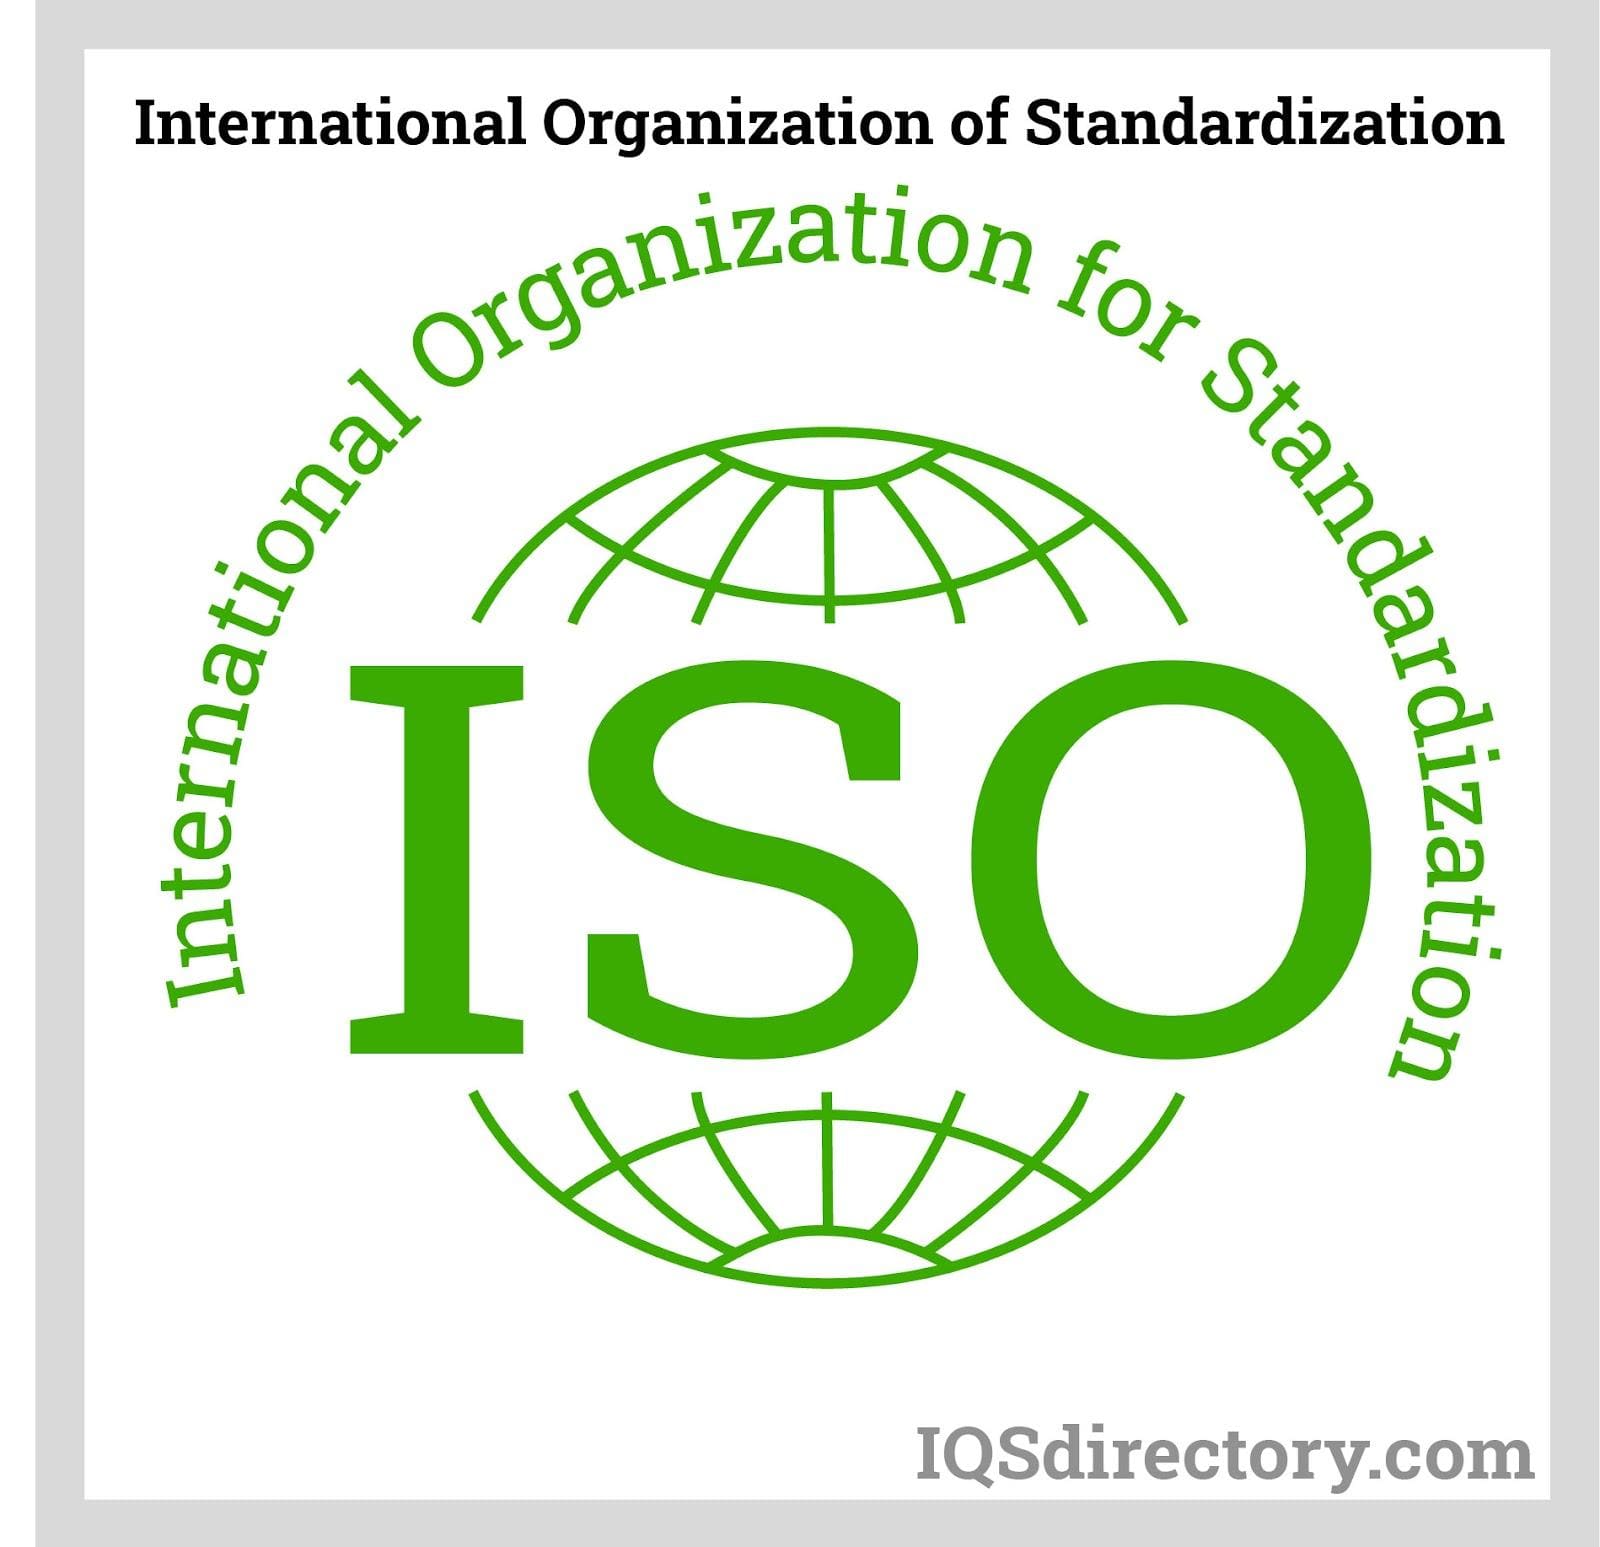 International Organization of Standardization